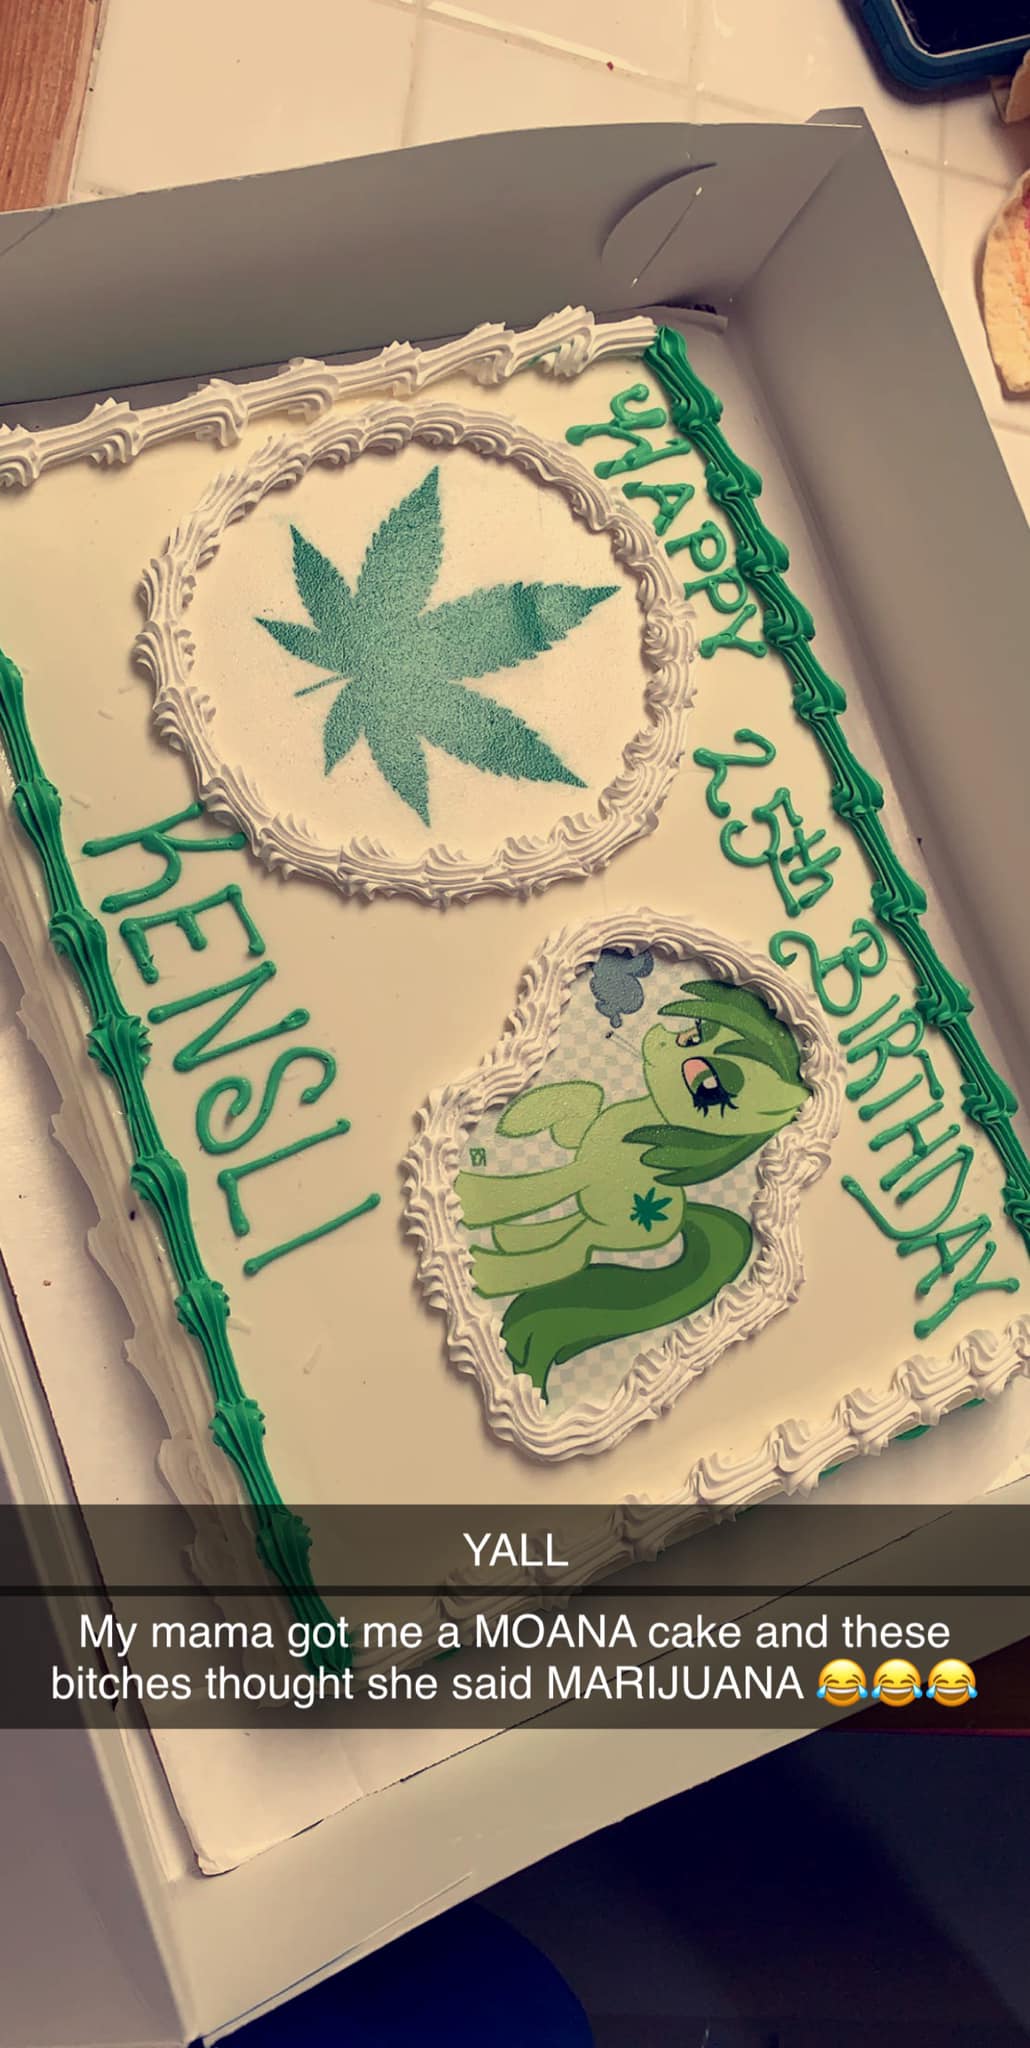 moana marijuana cake misunderstanding 